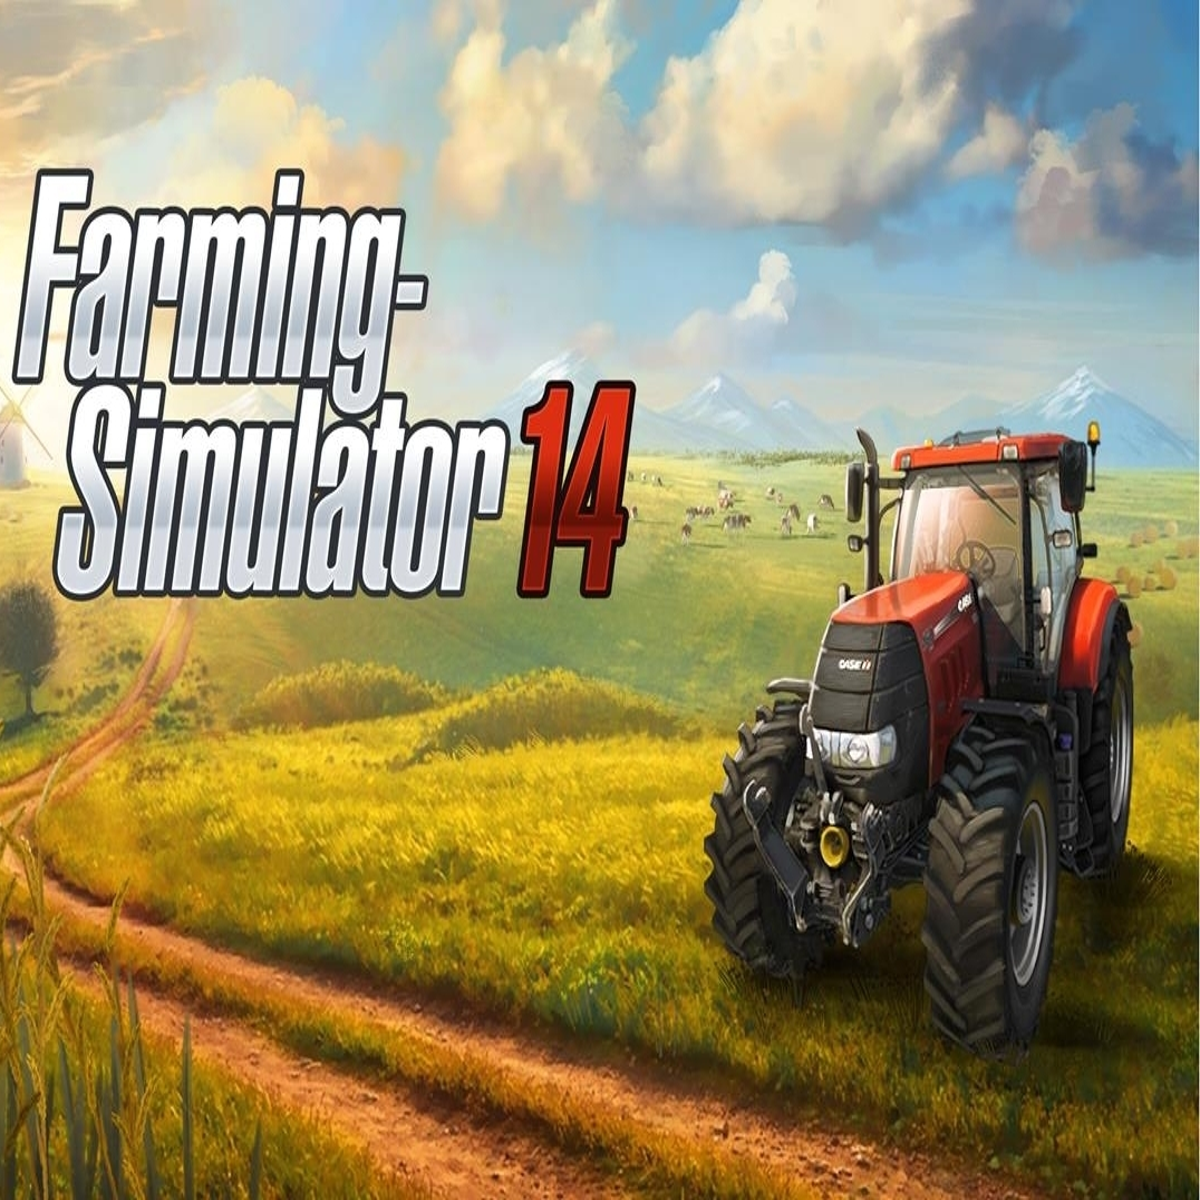 Tractor Farming Simulator 20 - Melhores Noticias APK for Android Download